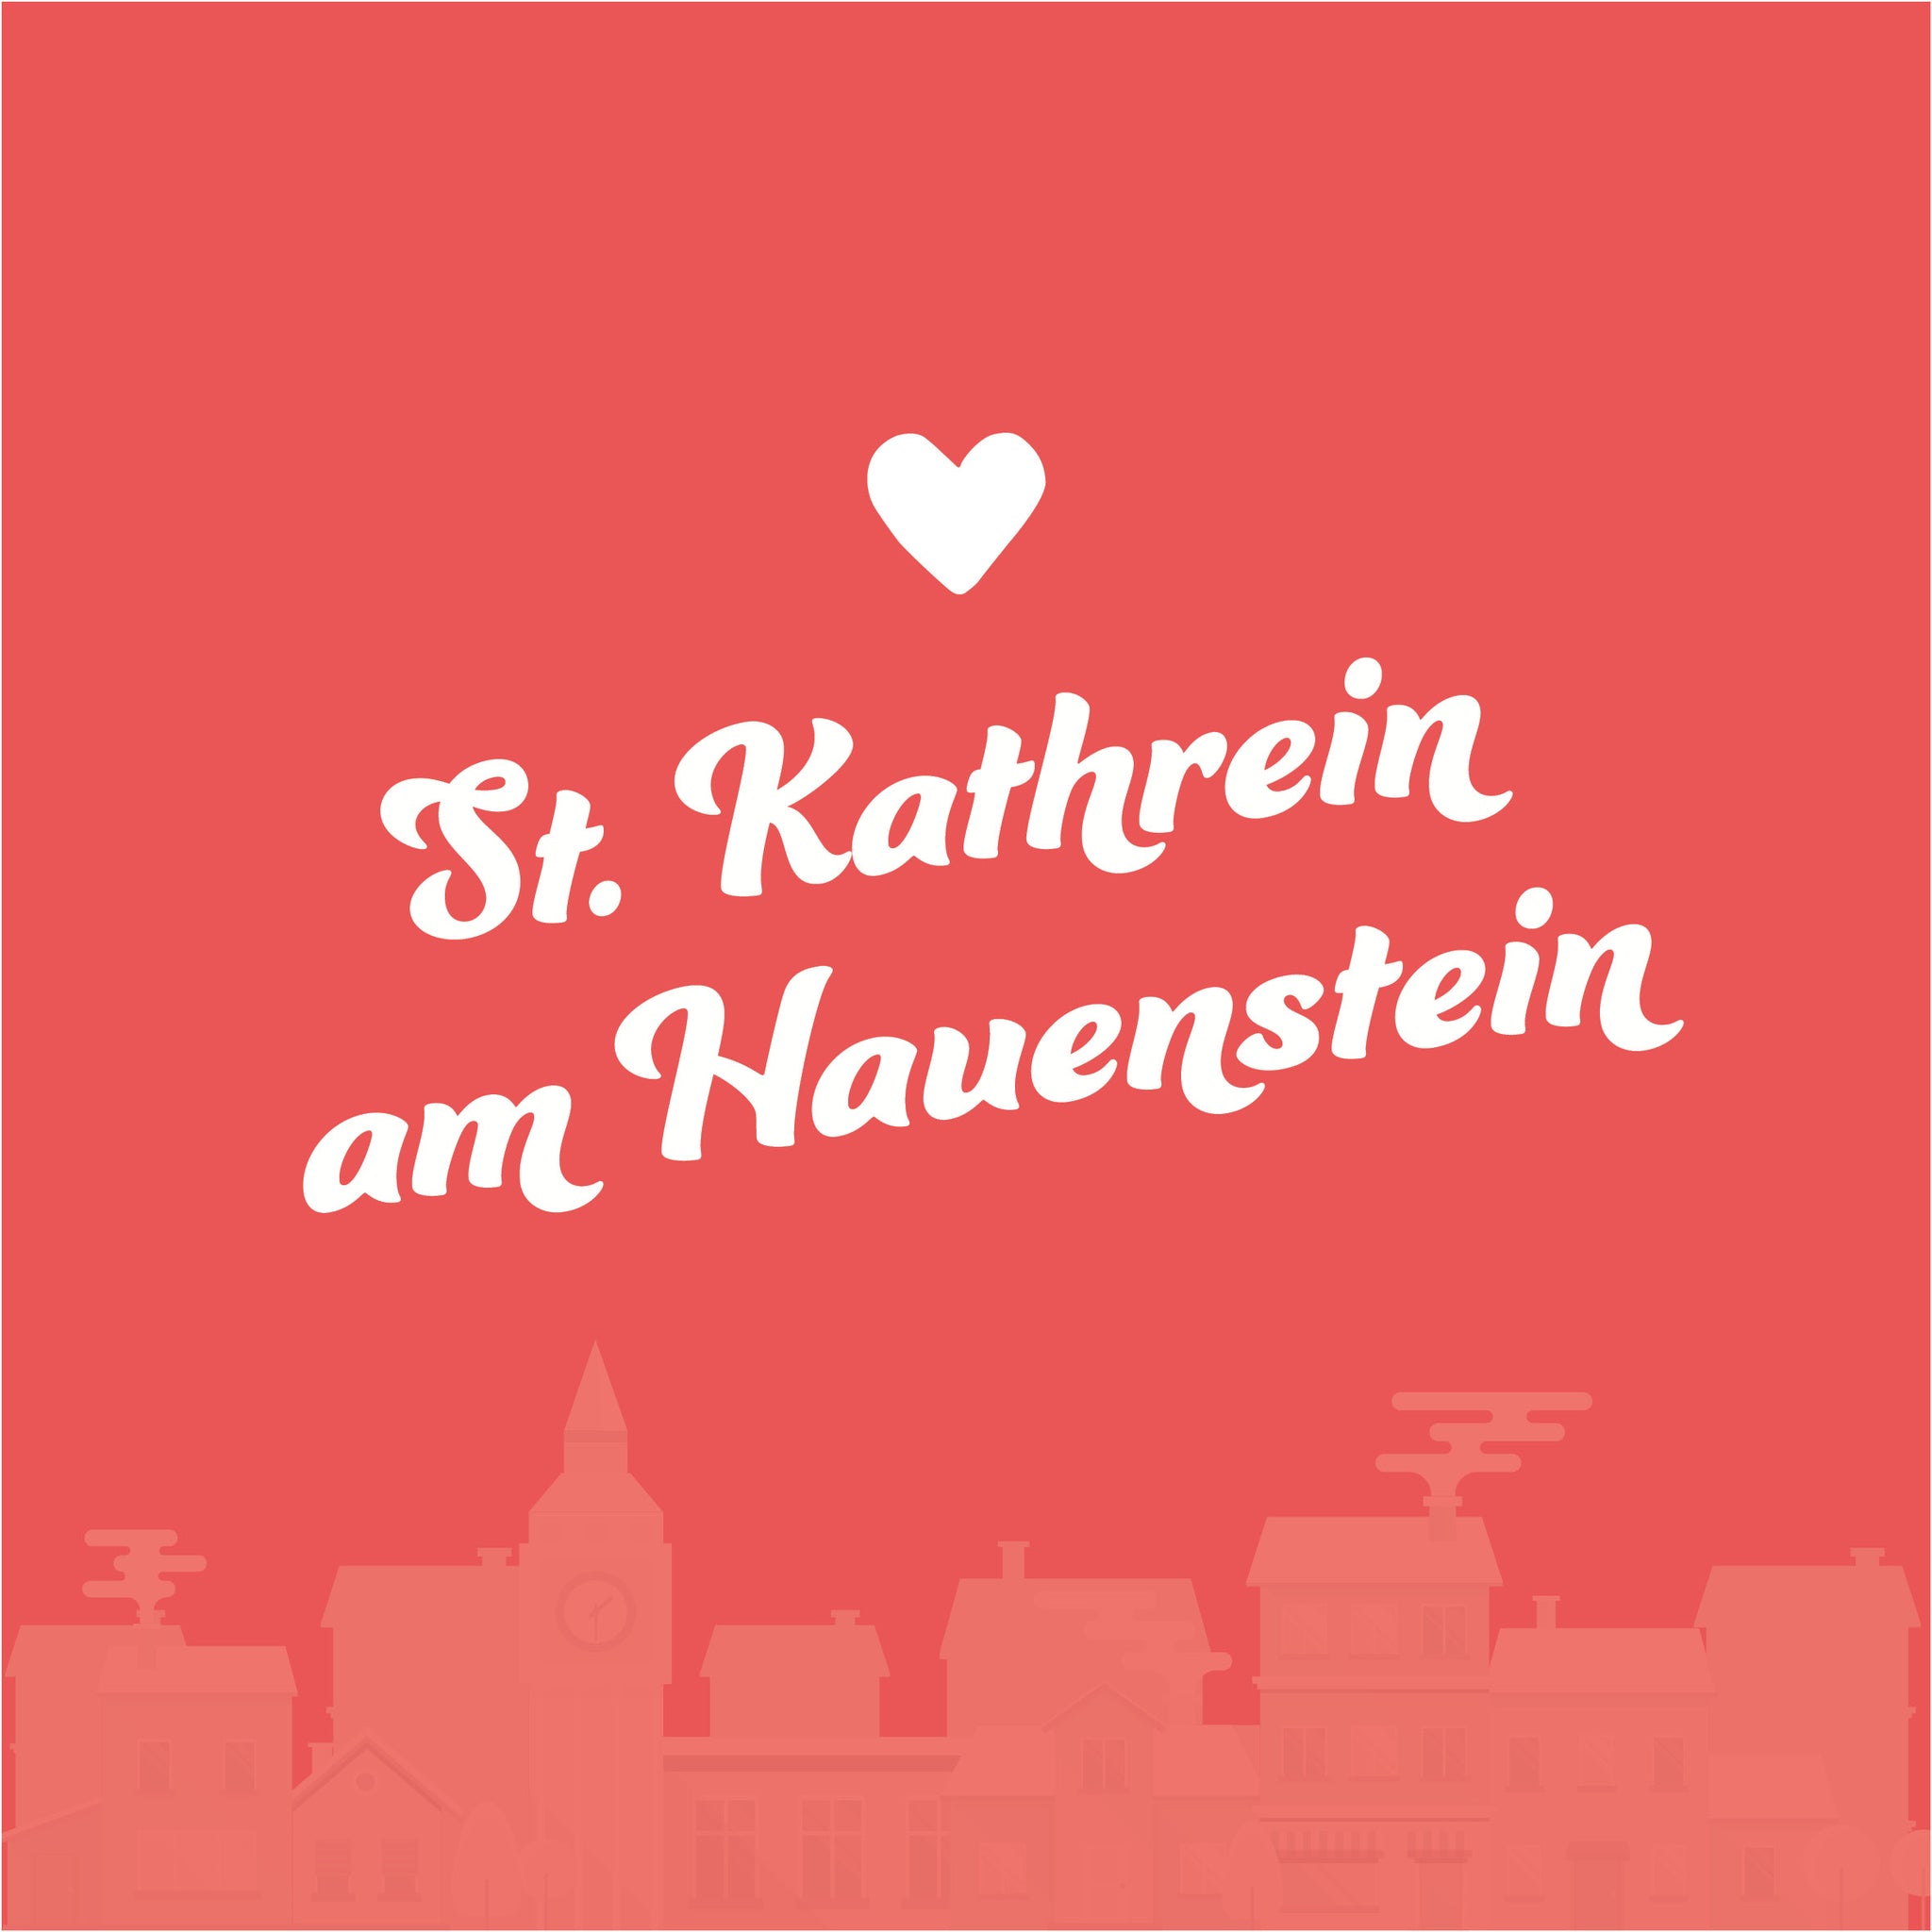 St. Kathrein am Hauenstein